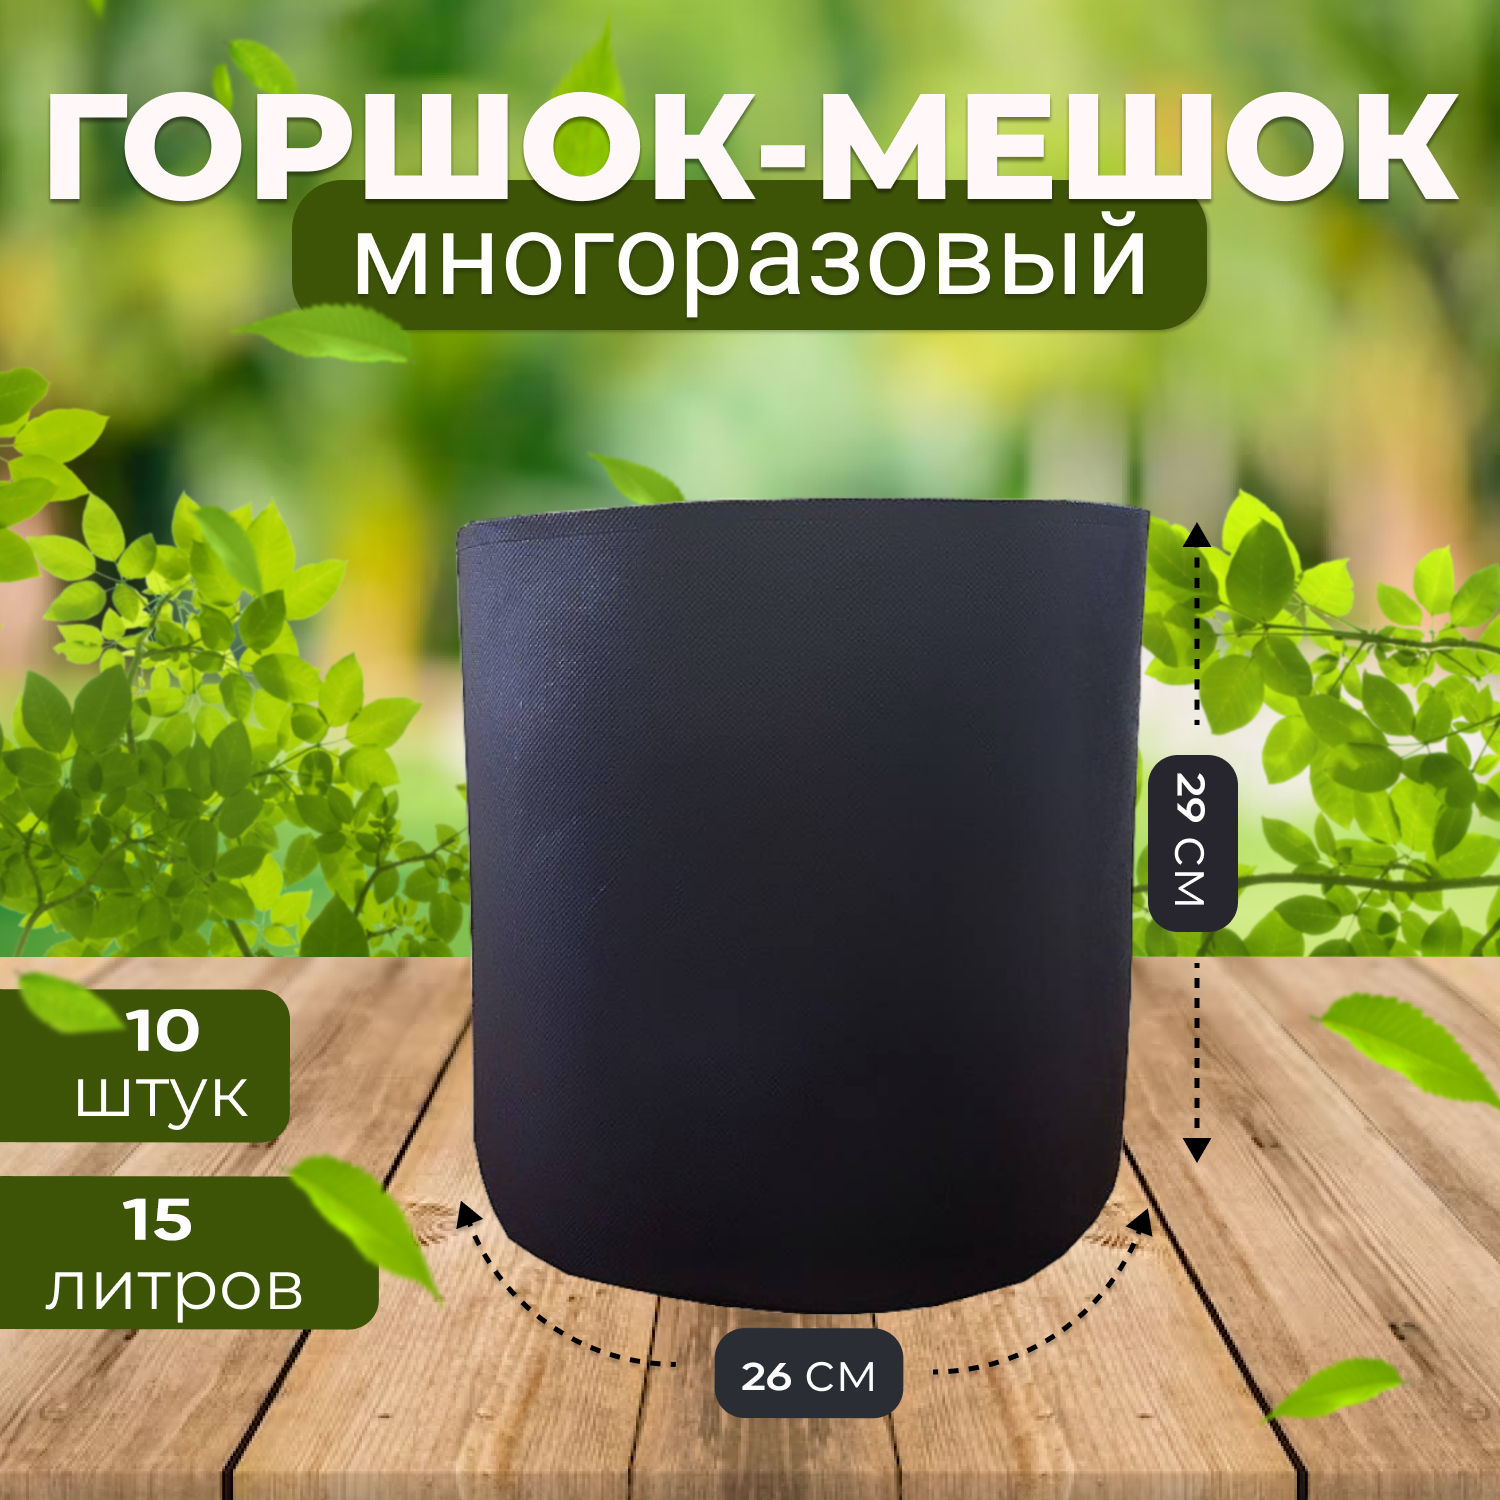 Горшок мешок текстильный из спанбонда Grower Green 10_litrov-G_10 10 литров, 10шт.